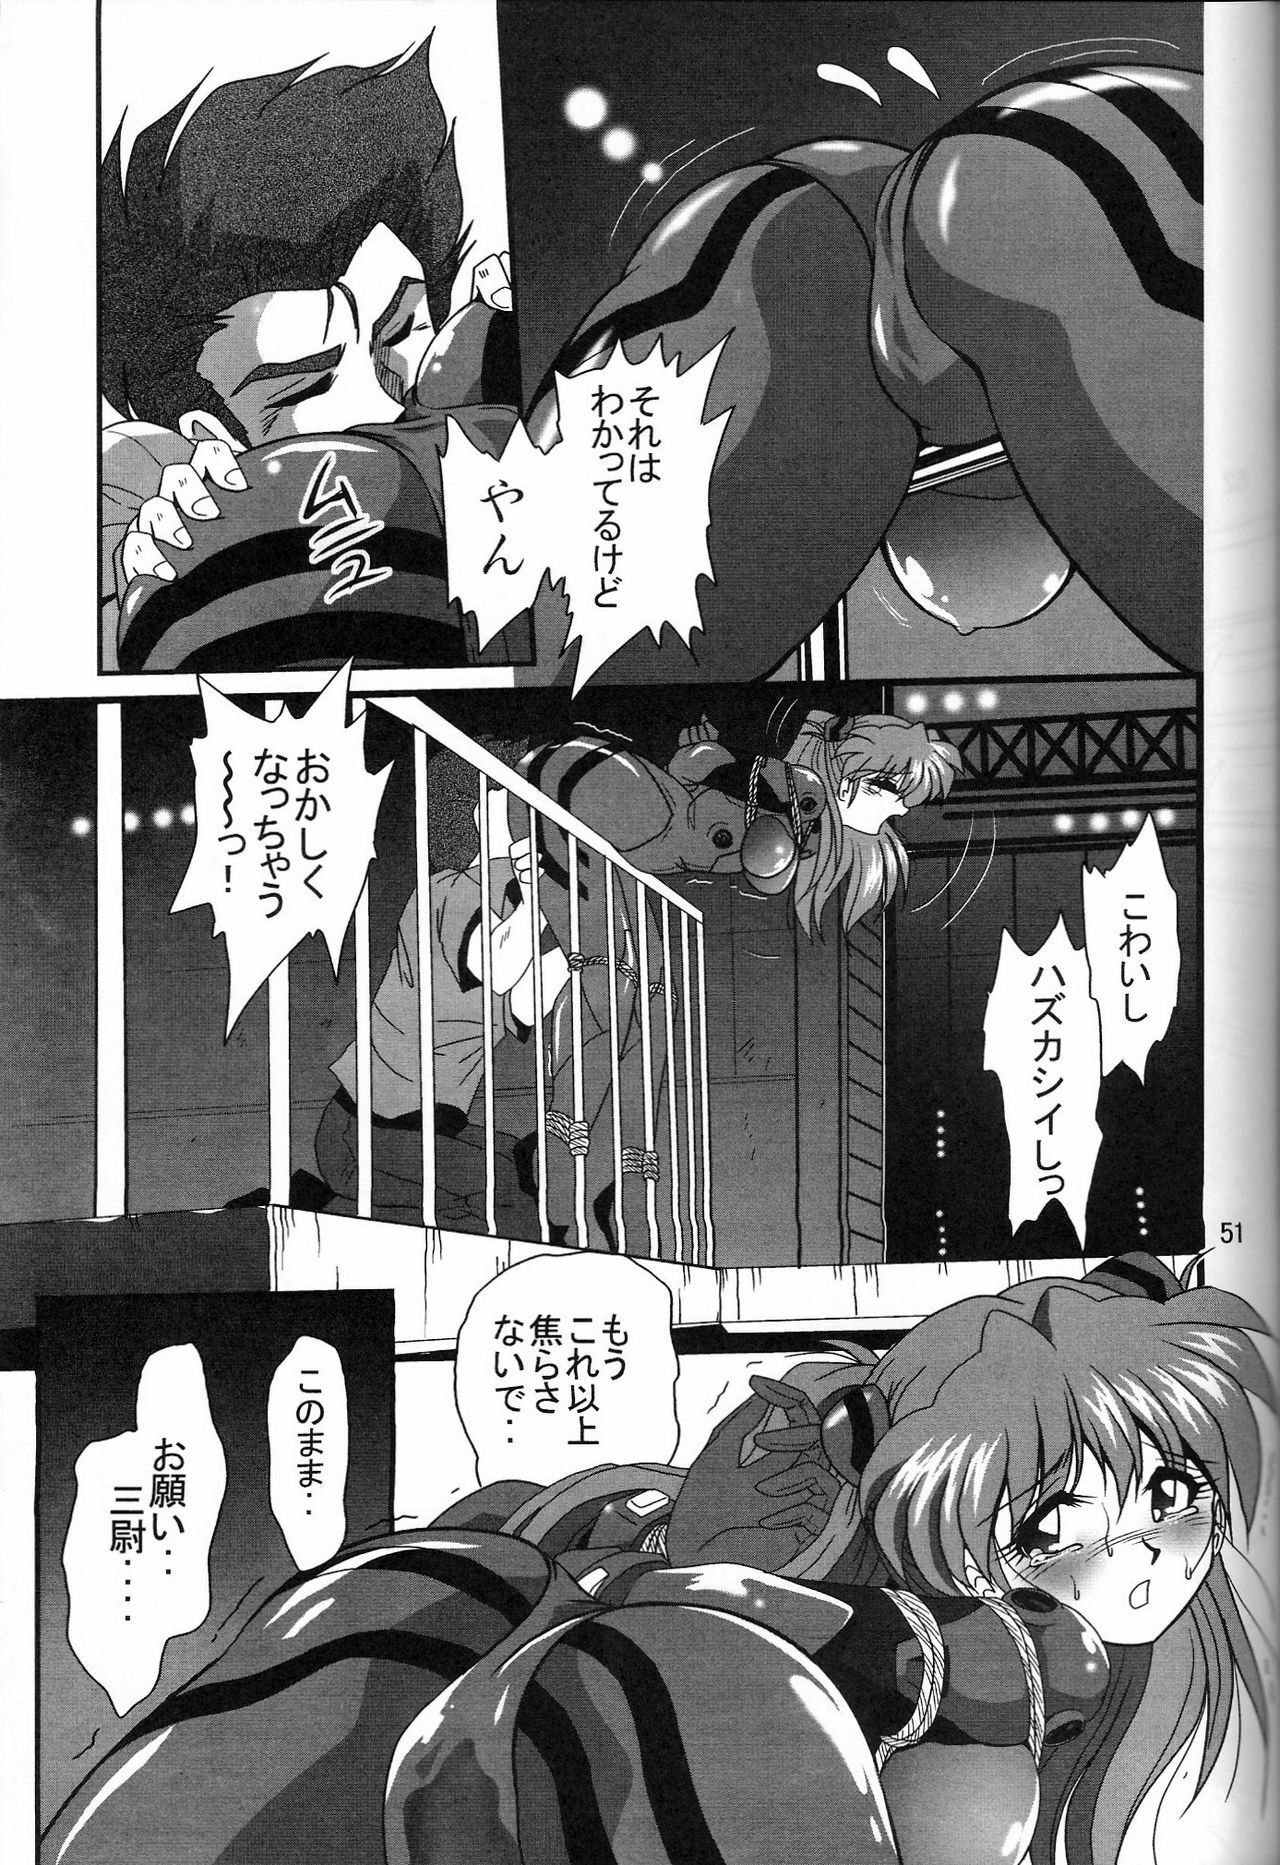 (COMIC1) [Thirty Saver Street 2D Shooting (Maki Hideto, Sawara Kazumitsu, Yonige-ya No Kyou)] Second Uchuu Keikaku 2 (Neon Genesis Evangelion) page 51 full